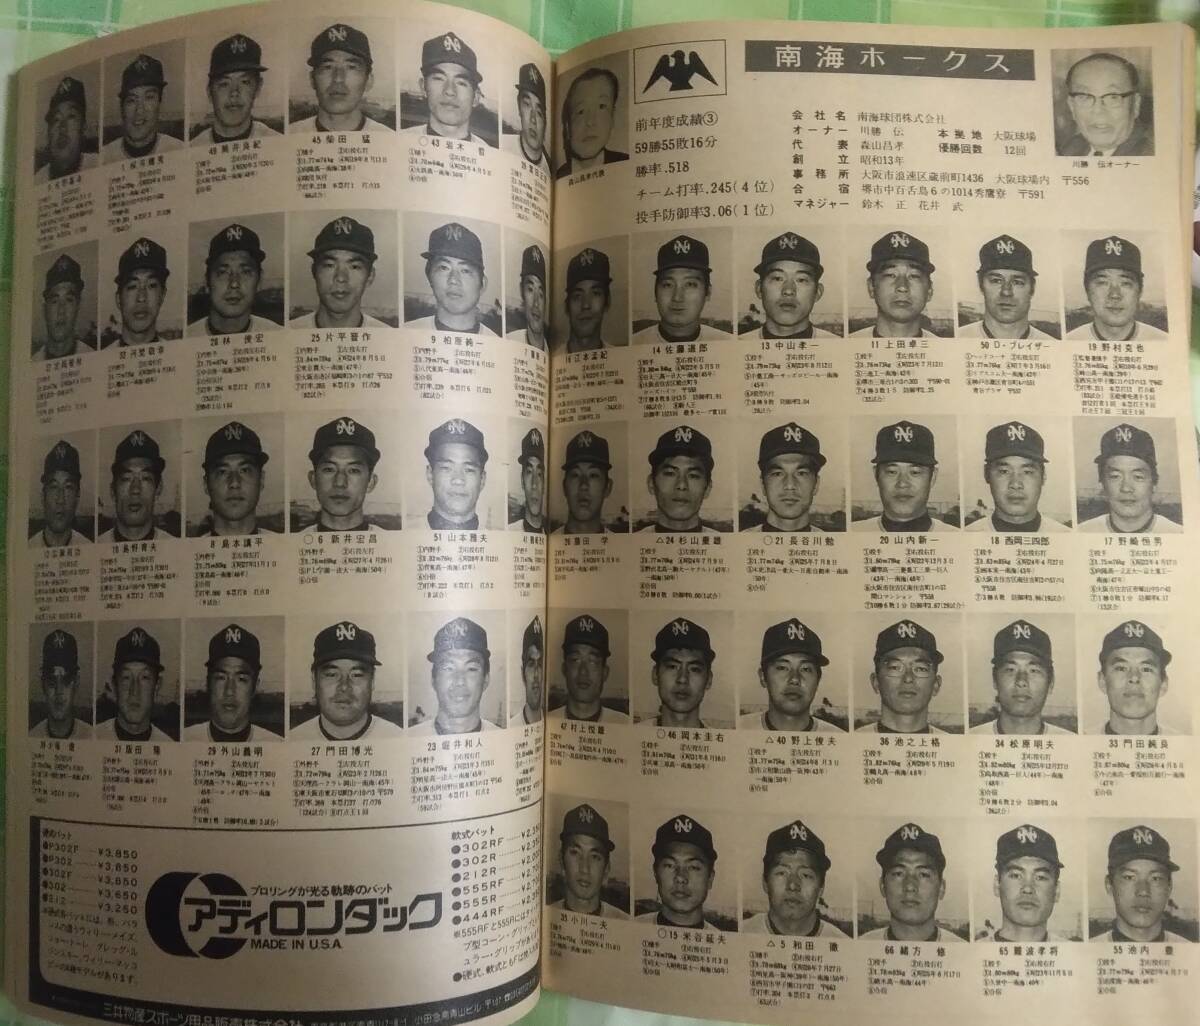  еженедельный Baseball 1975 год 3 месяц 3 день очень большой номер 75 год Professional Baseball игрок фотография название .... Nagashima Shigeo звезда .. один рисовое поле .. один Baseball * журнал фирма 